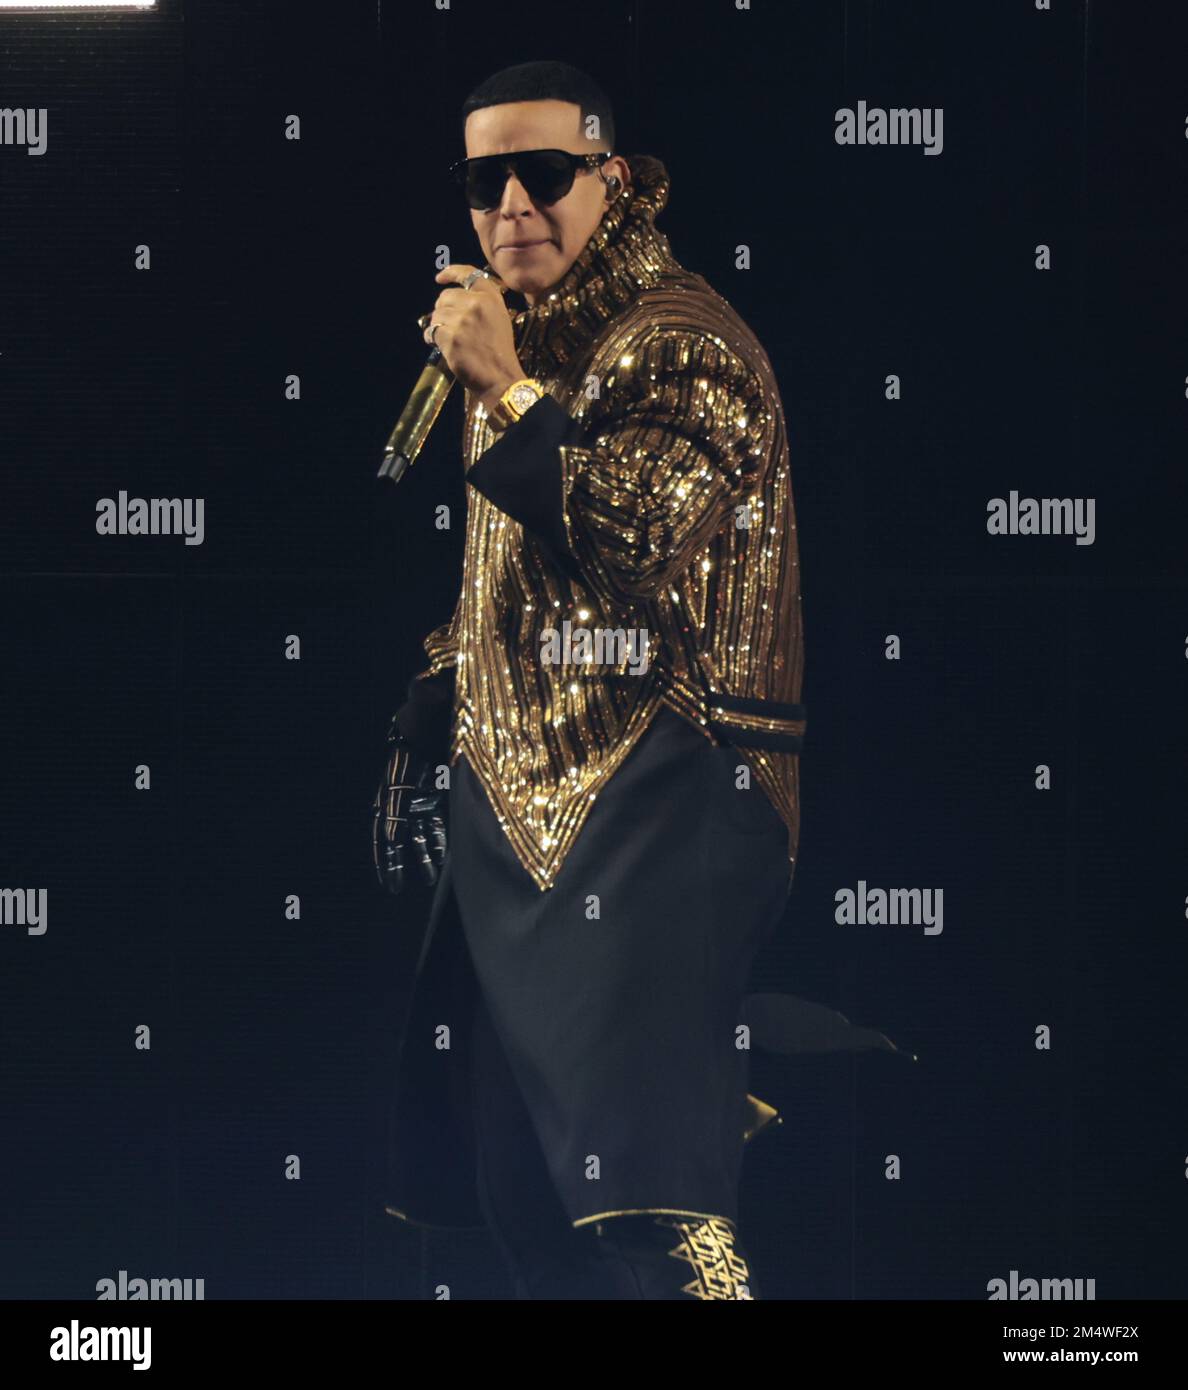 Daddy Yankee, More of the Week's Biggest Winners (Sept. 24) – Billboard